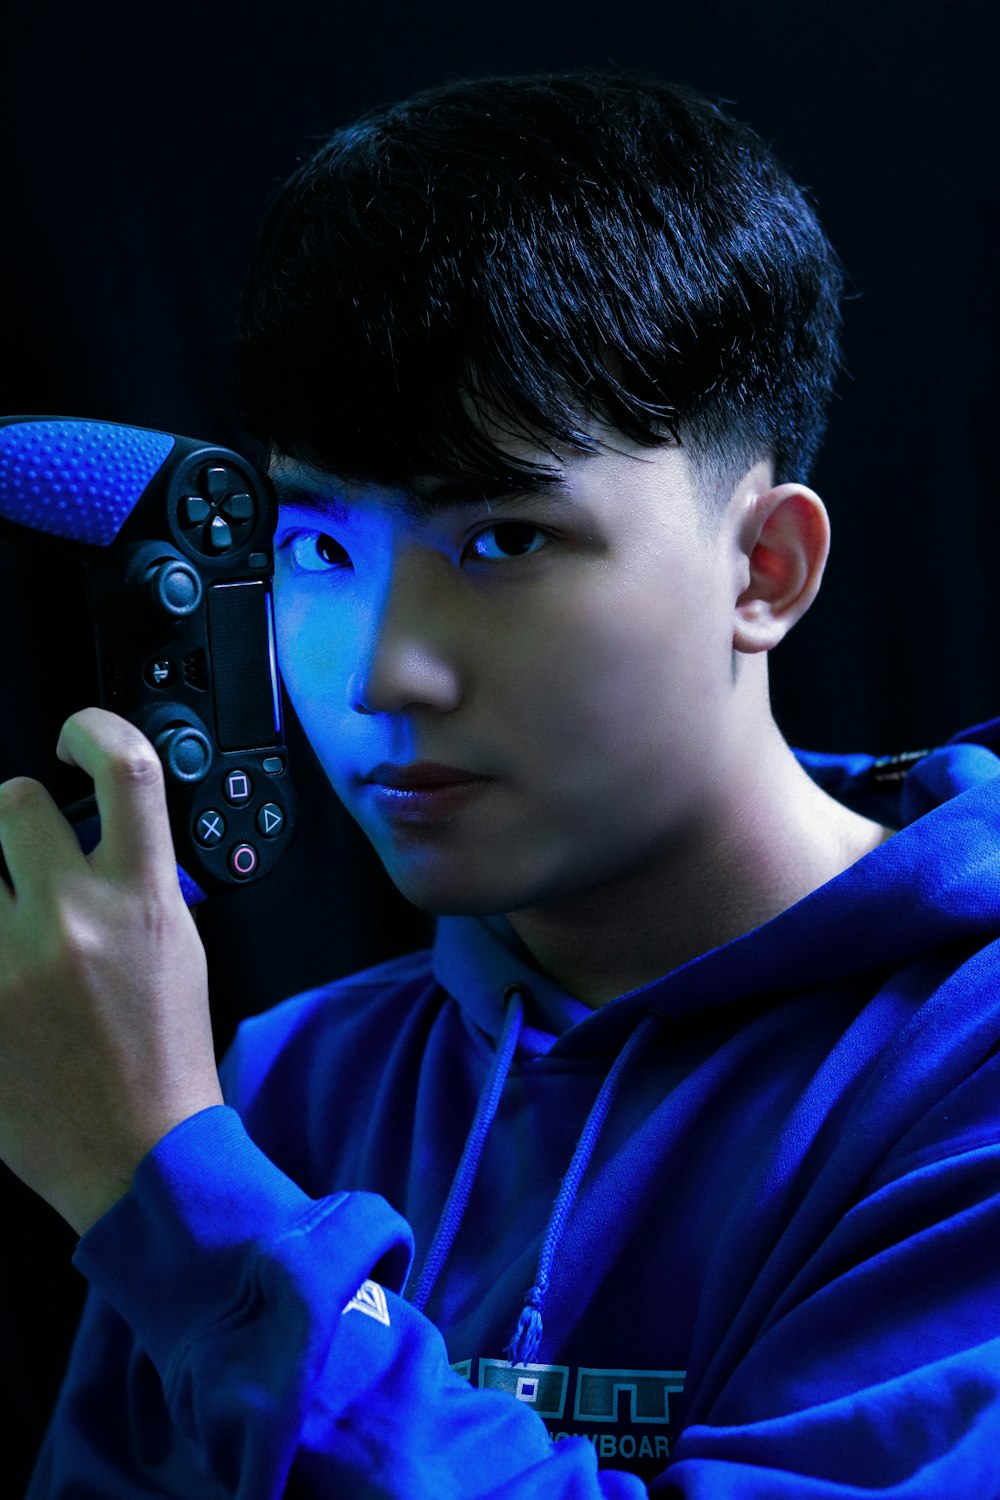 Chico con camisa azul de manga larga sosteniendo un controlador de juego negro